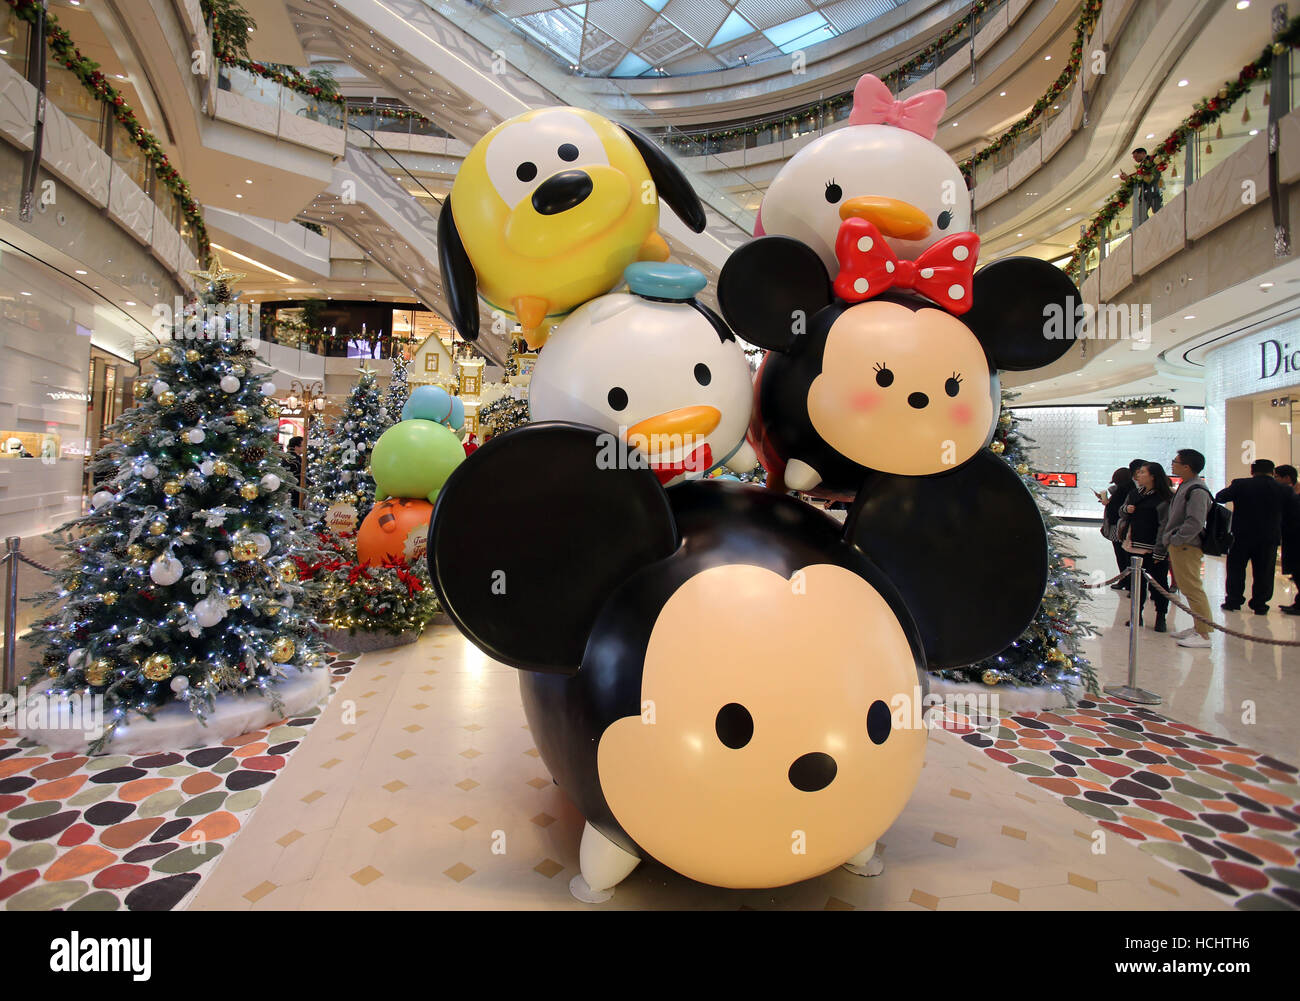 (161209) -- SHANGHAI, le 9 décembre 2016 (Xinhua) -- Photo prise le 9 décembre 2016, Disney montre des personnages de dessins animés à l'intérieur du Centre Financier International de Shanghai dans l'est de la Chine, Shanghai. Le centre a créé un jardin de dessin animé en collaboration avec la Walt Disney Company d'accueillir le prochain Noël. (Xinhua/Liu Ying) (mp) Banque D'Images